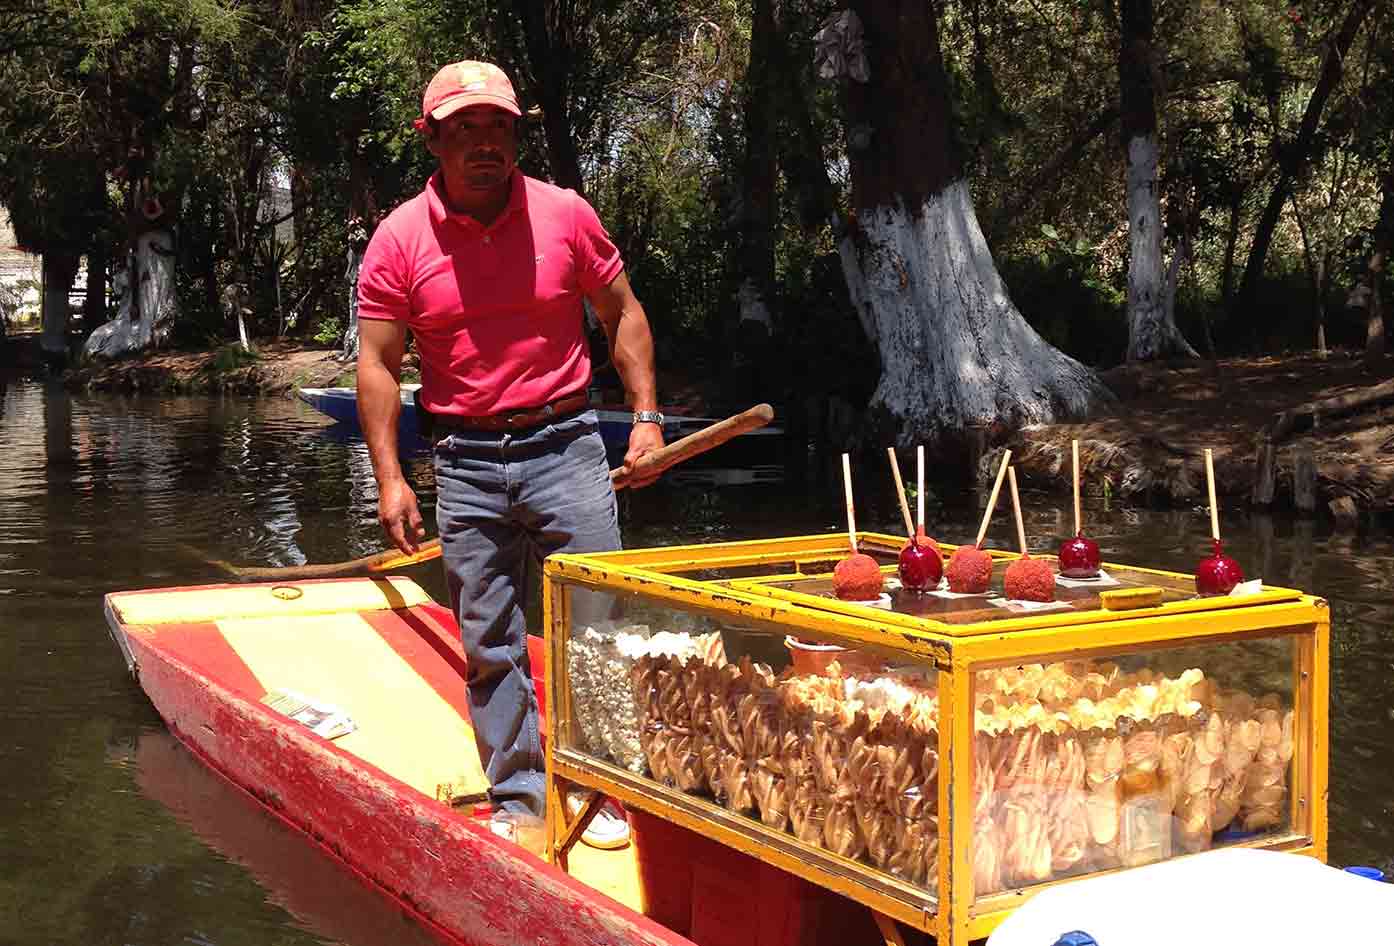 xochimilco boats